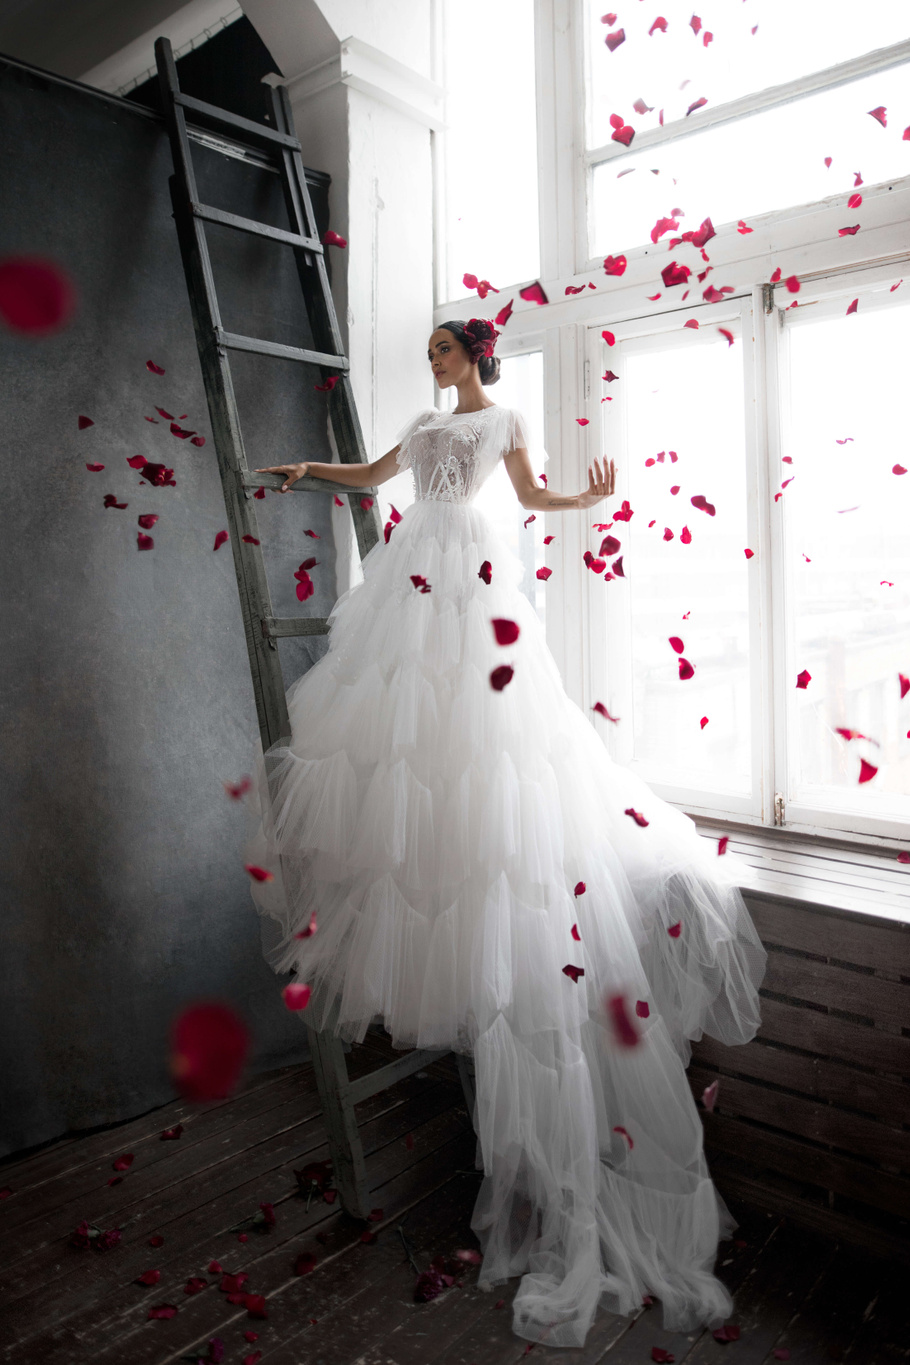 Купить свадебное платье «Лоренсо» Бламмо Биамо из коллекции Нимфа 2020 года в Екатеринбурге